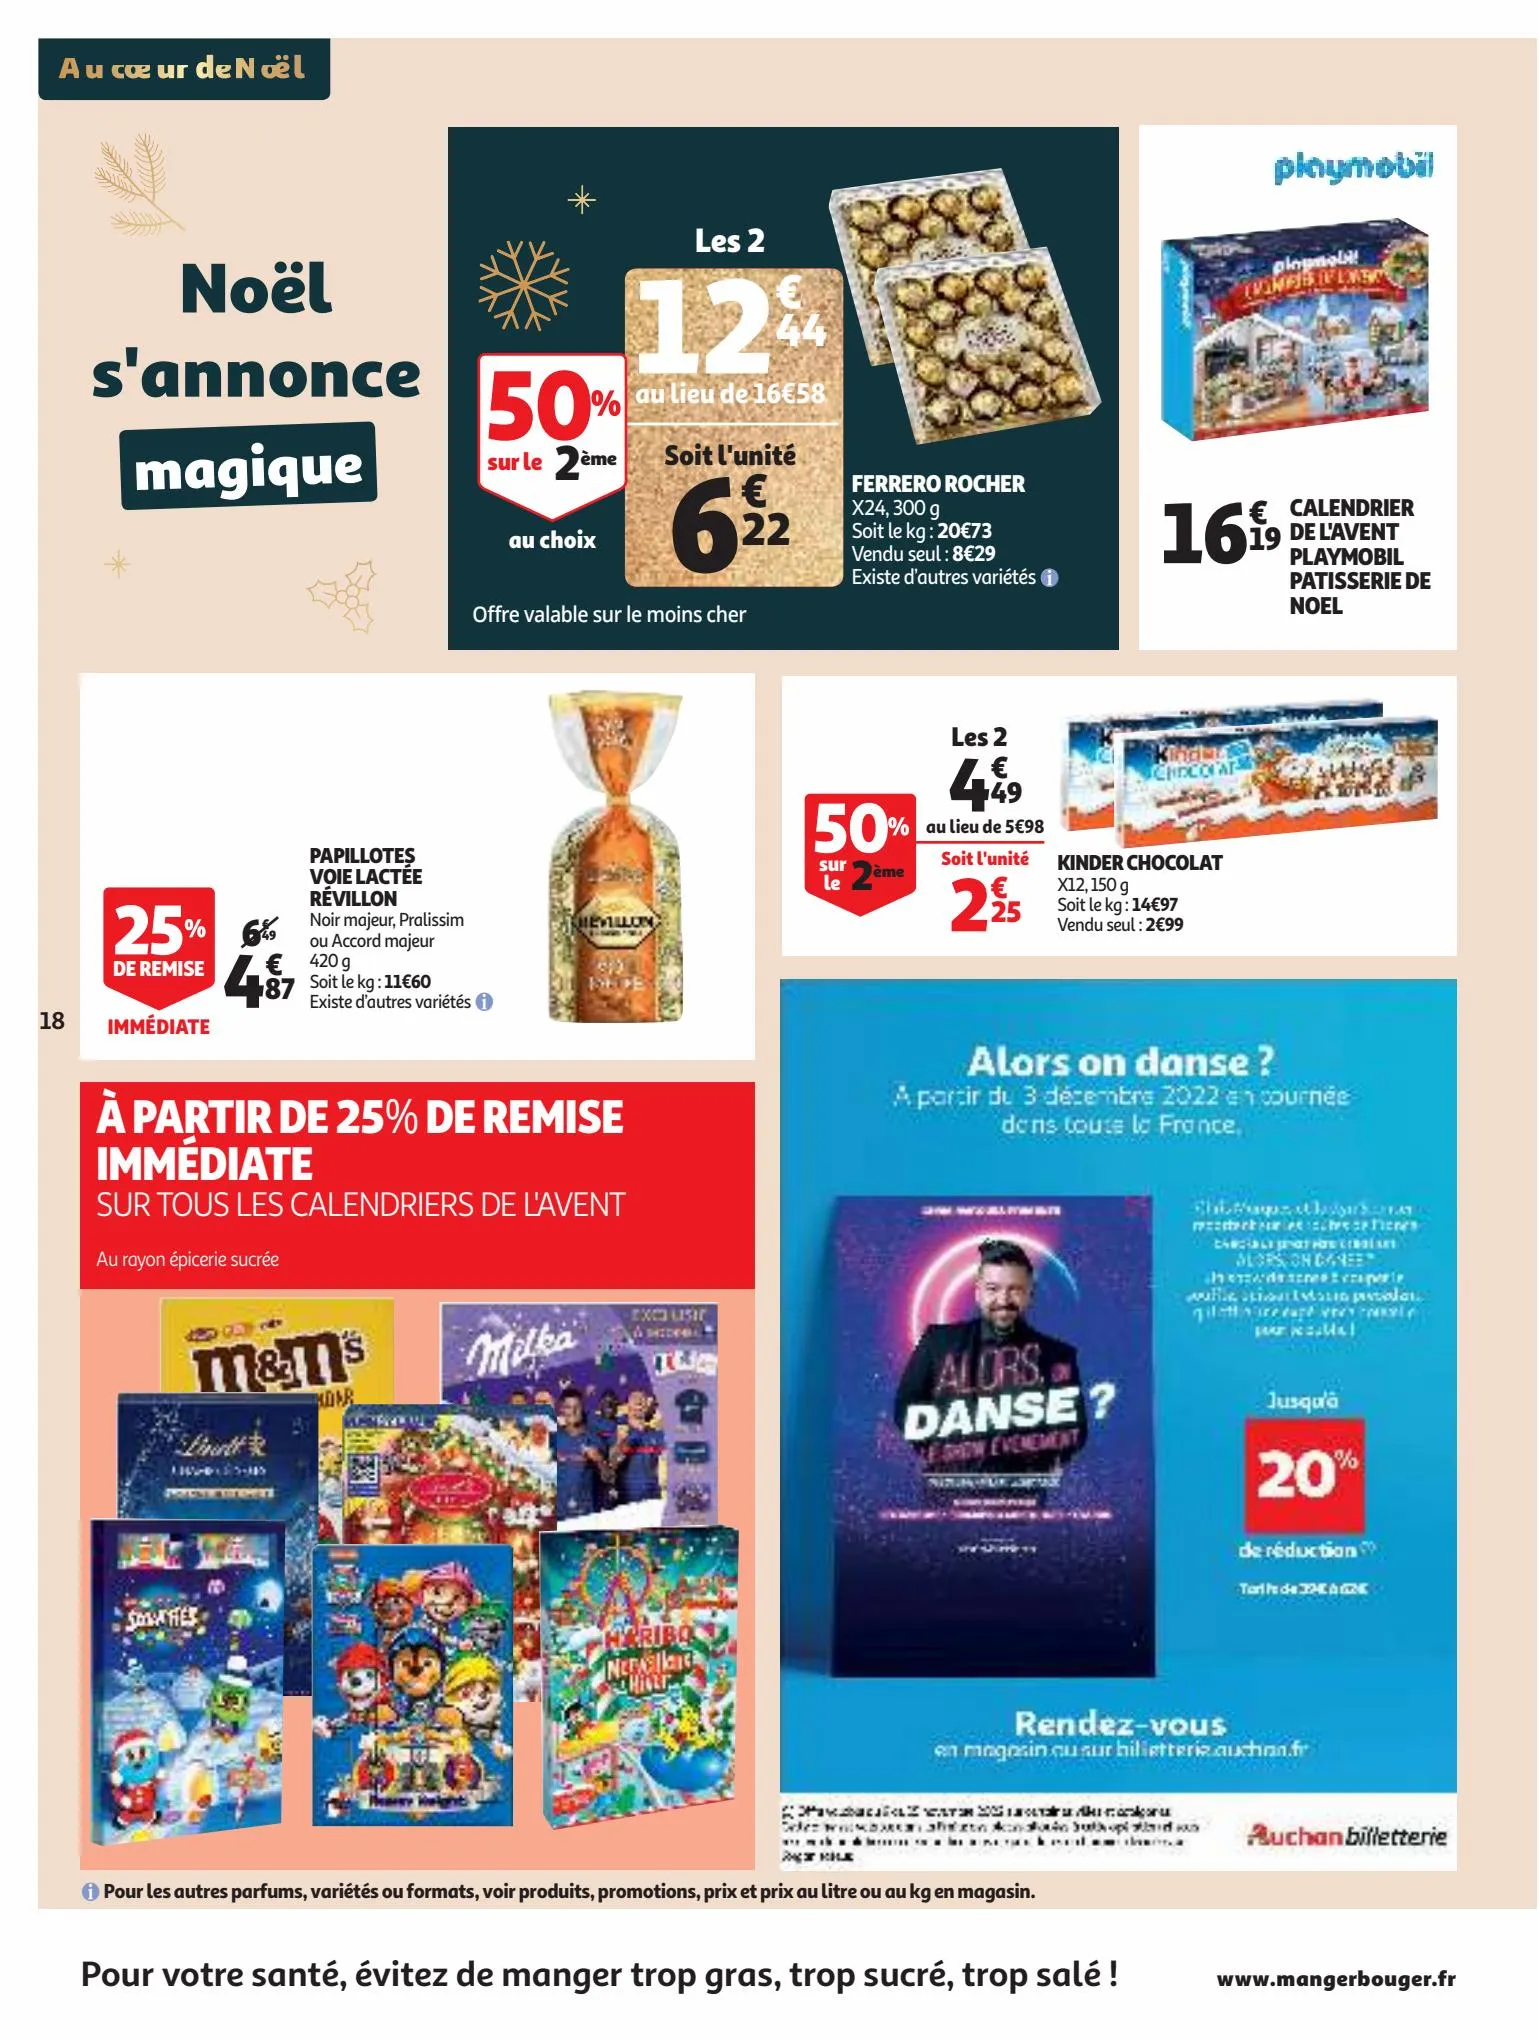 Catalogue 25 Jours Auchan, page 00018